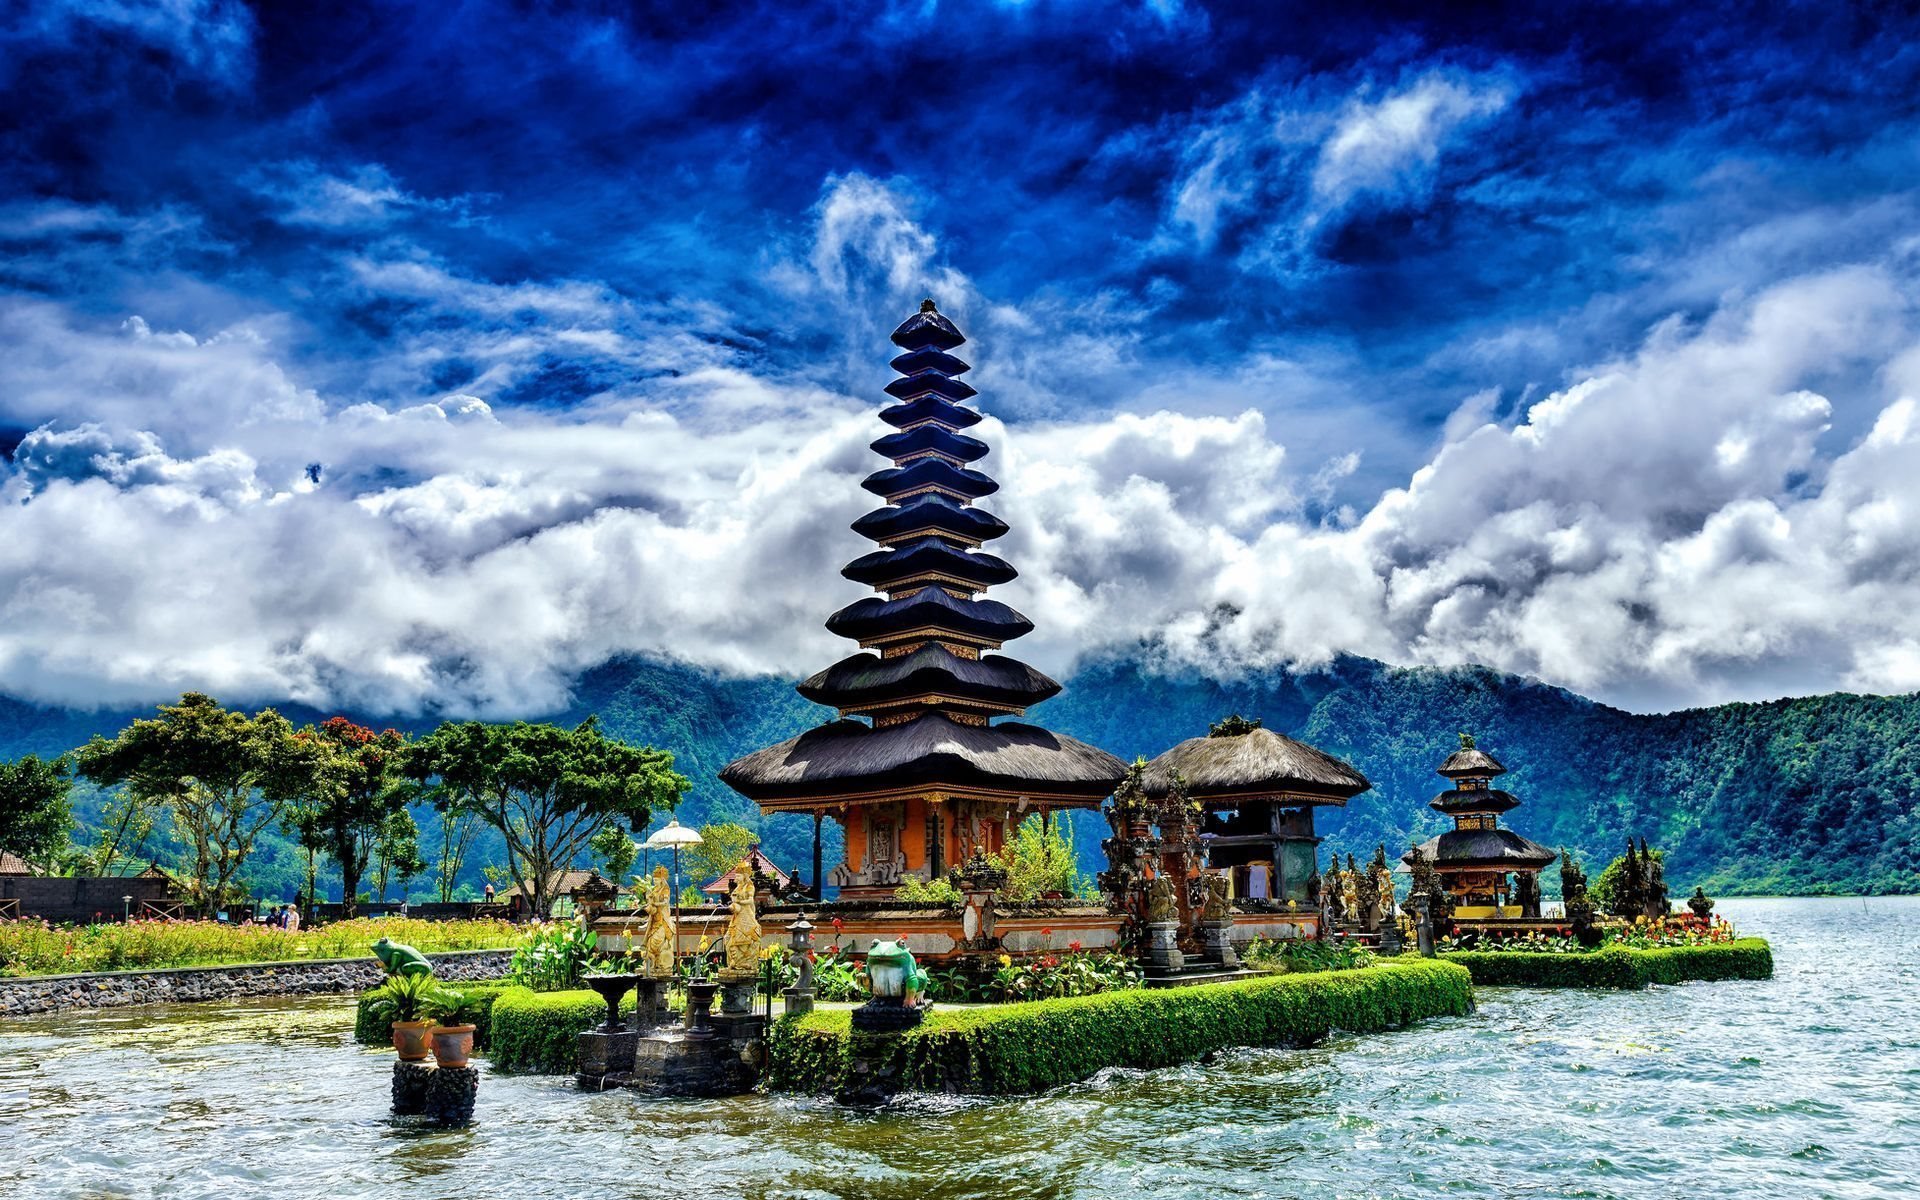 ダウンロード画像 湖beratan バリ島 インドネシア 画面の解像度 19x10 壁紙デスクトップ上